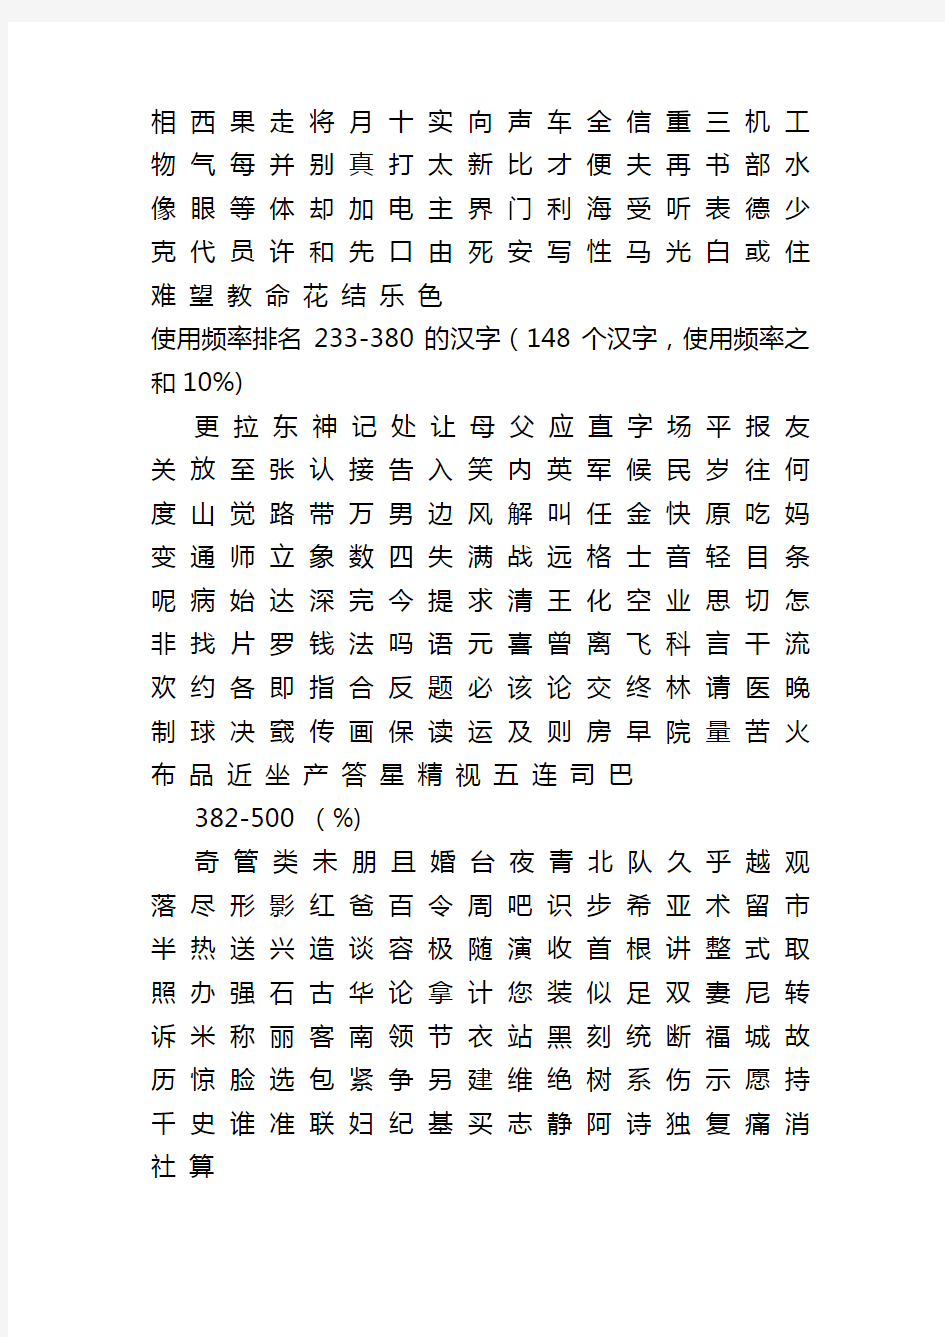 儿童识字 汉字的使用频率 高频字表